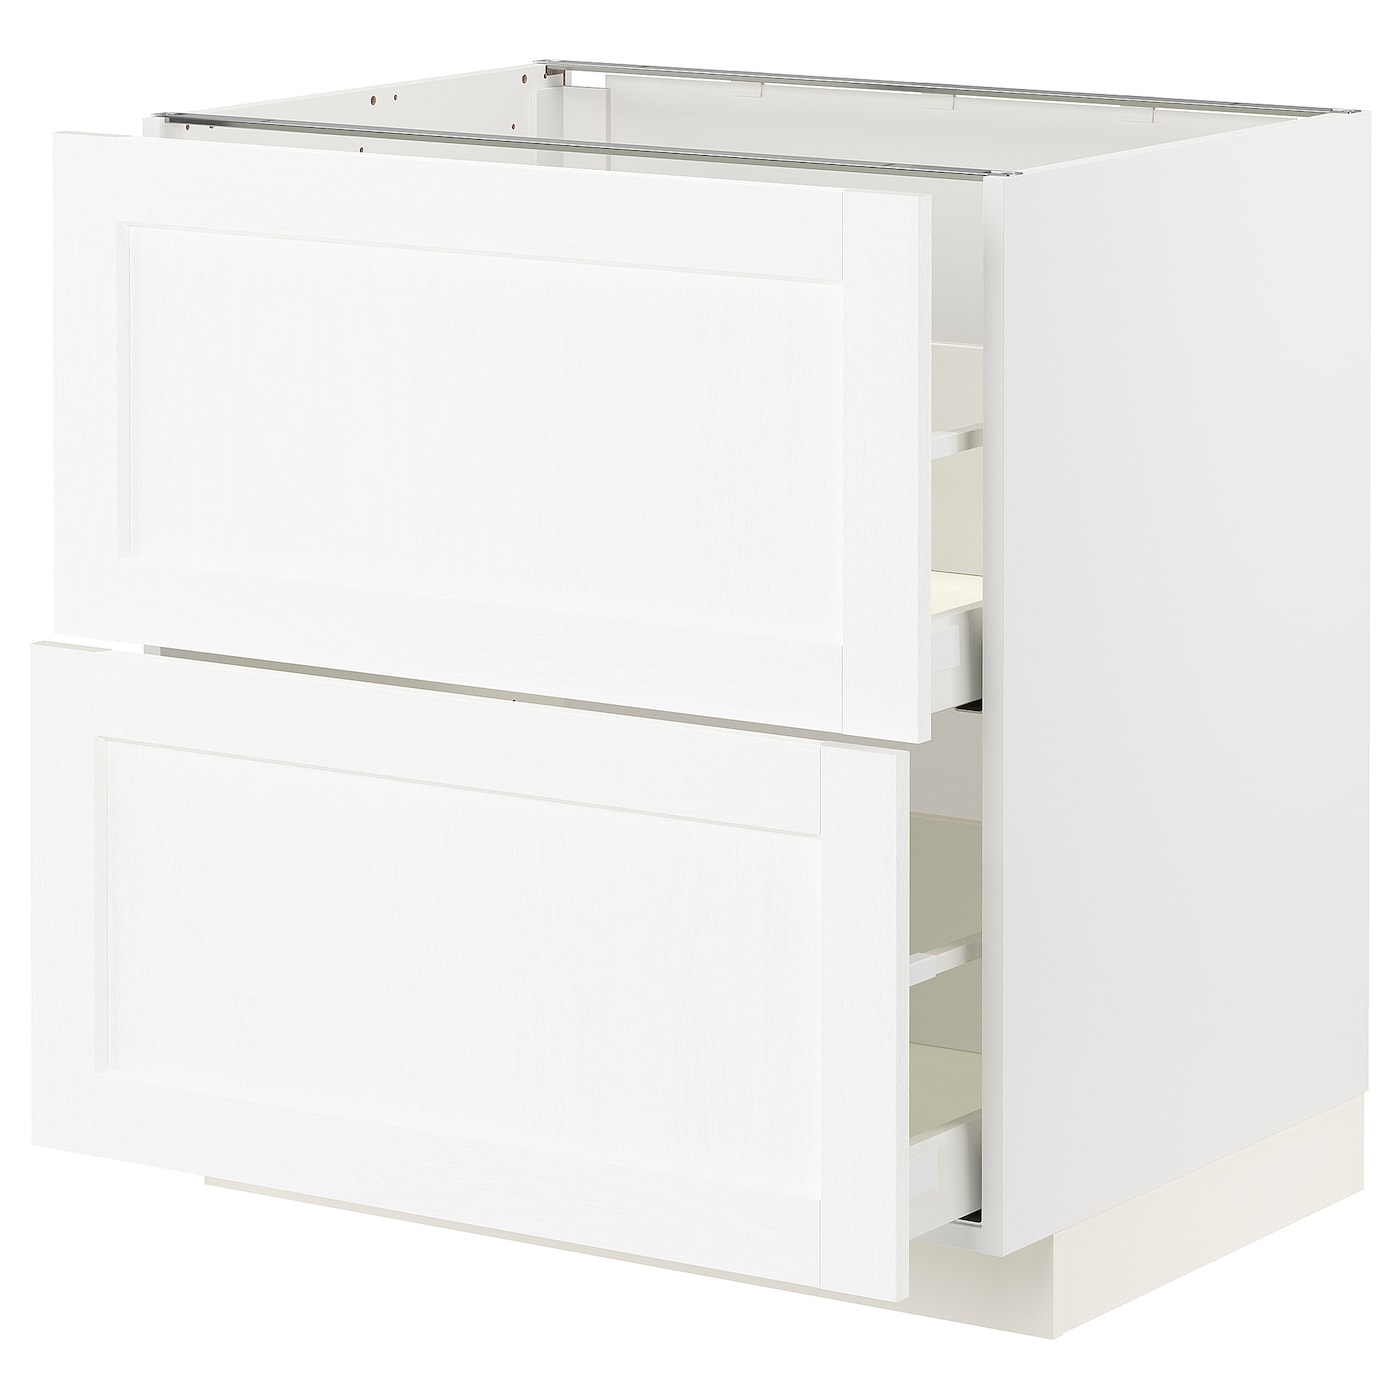 Напольный шкаф  - IKEA METOD MAXIMERA, 88x61,9x80см, белый, МЕТОД МАКСИМЕРА ИКЕА